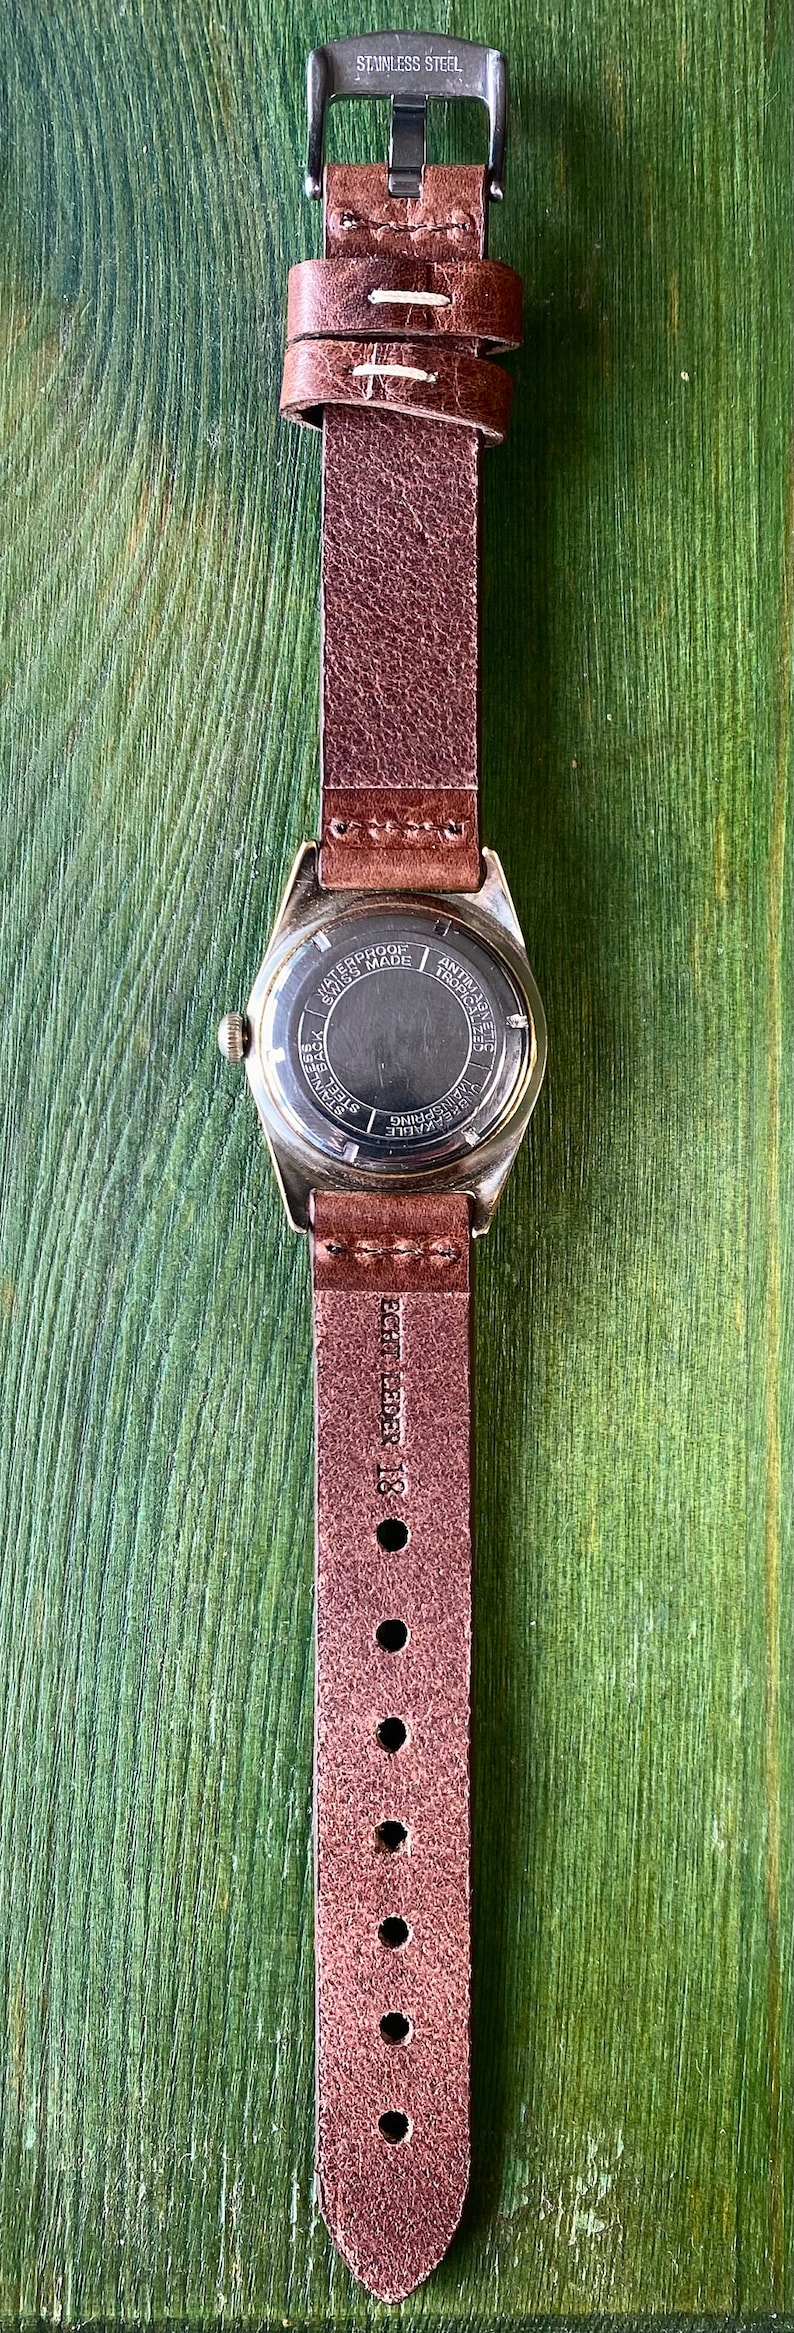 Swiss-made SR RENOVA Datumsfunktion schwarzes Zifferblatt mechanische Vintage Uhr ca. 1965 gewartet Bild 5